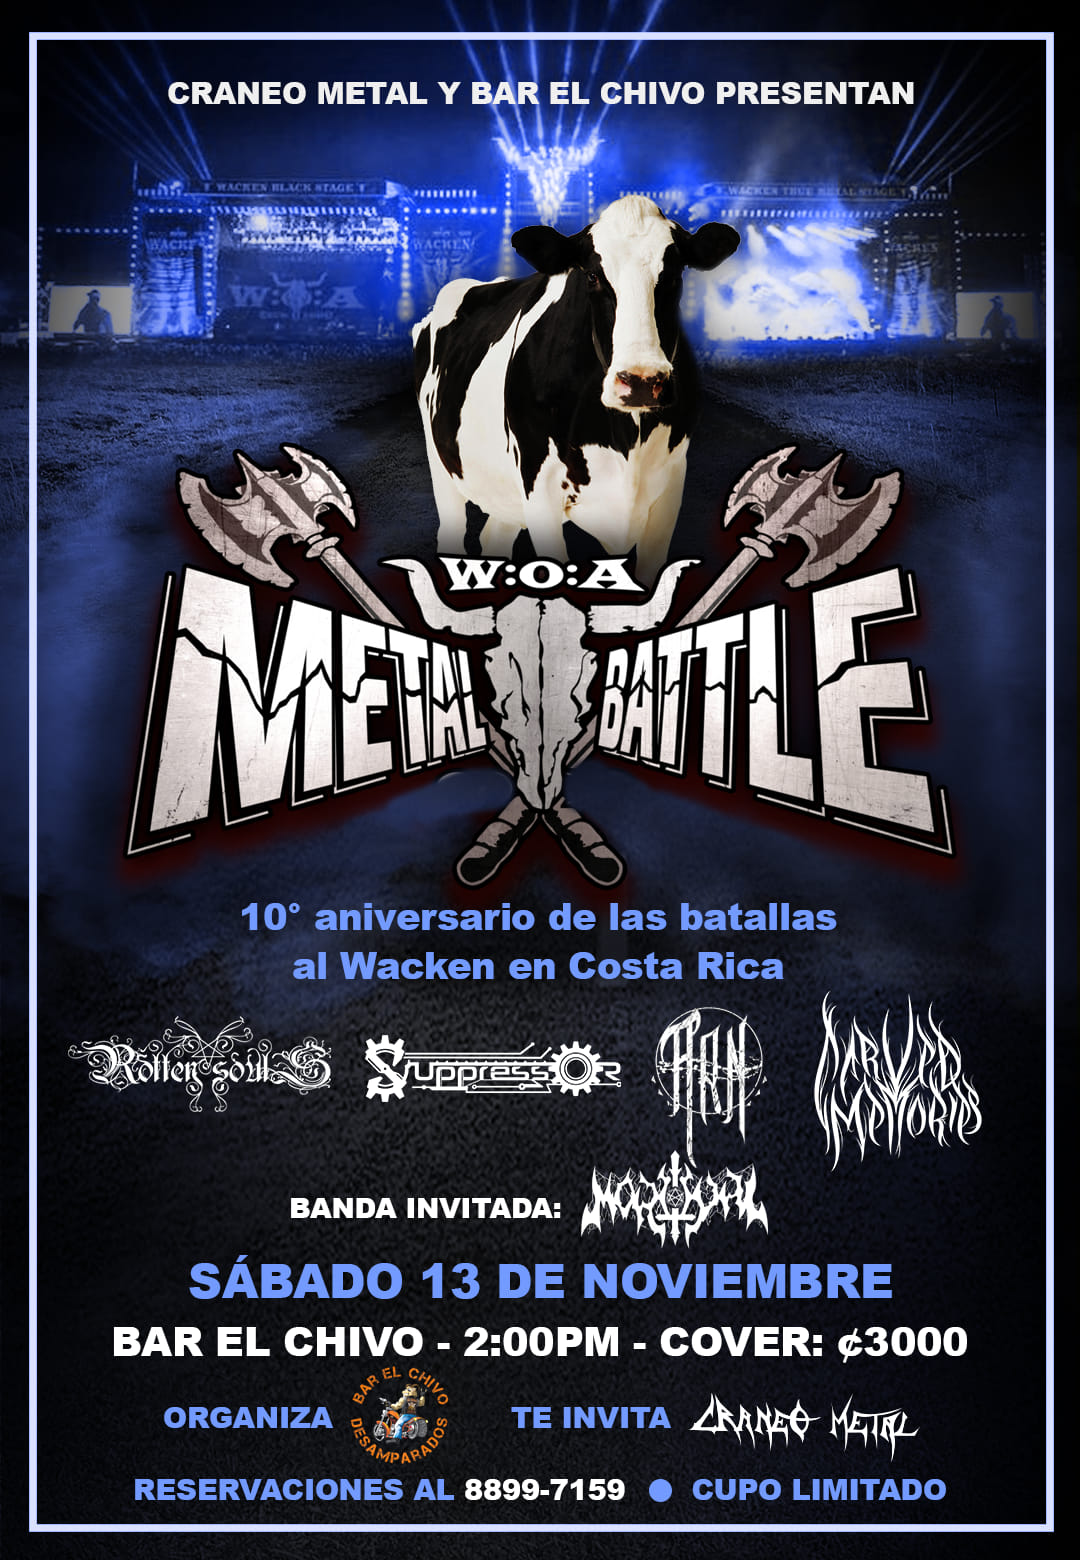 10 años Metal Batalla al W:O:A - Costa Rica.  3 de 5 eventos.